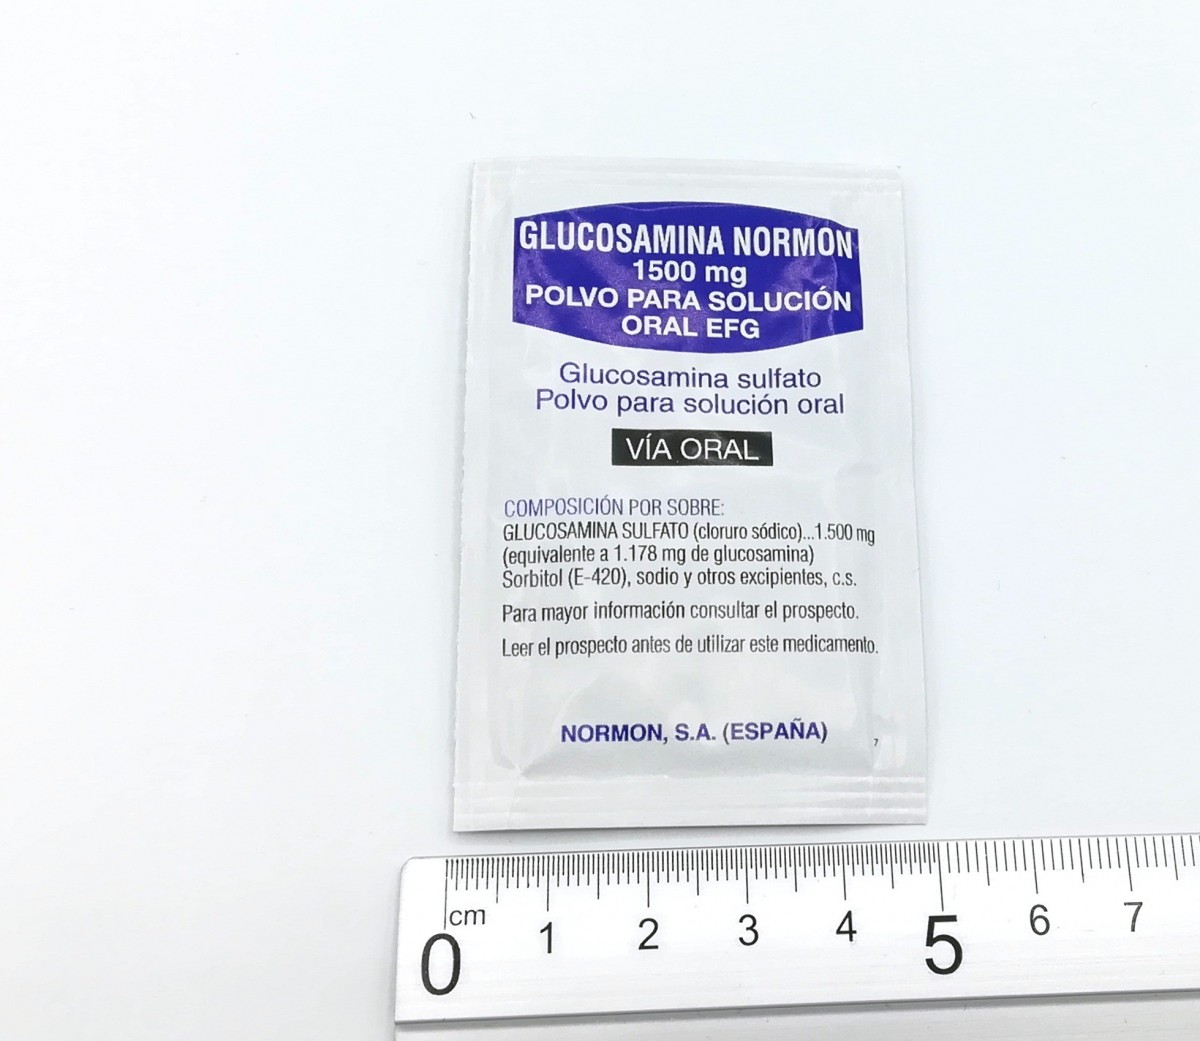 GLUCOSAMINA NORMON 1500 mg POLVO PARA SOLUCION ORAL EFG, 20 sobres fotografía de la forma farmacéutica.